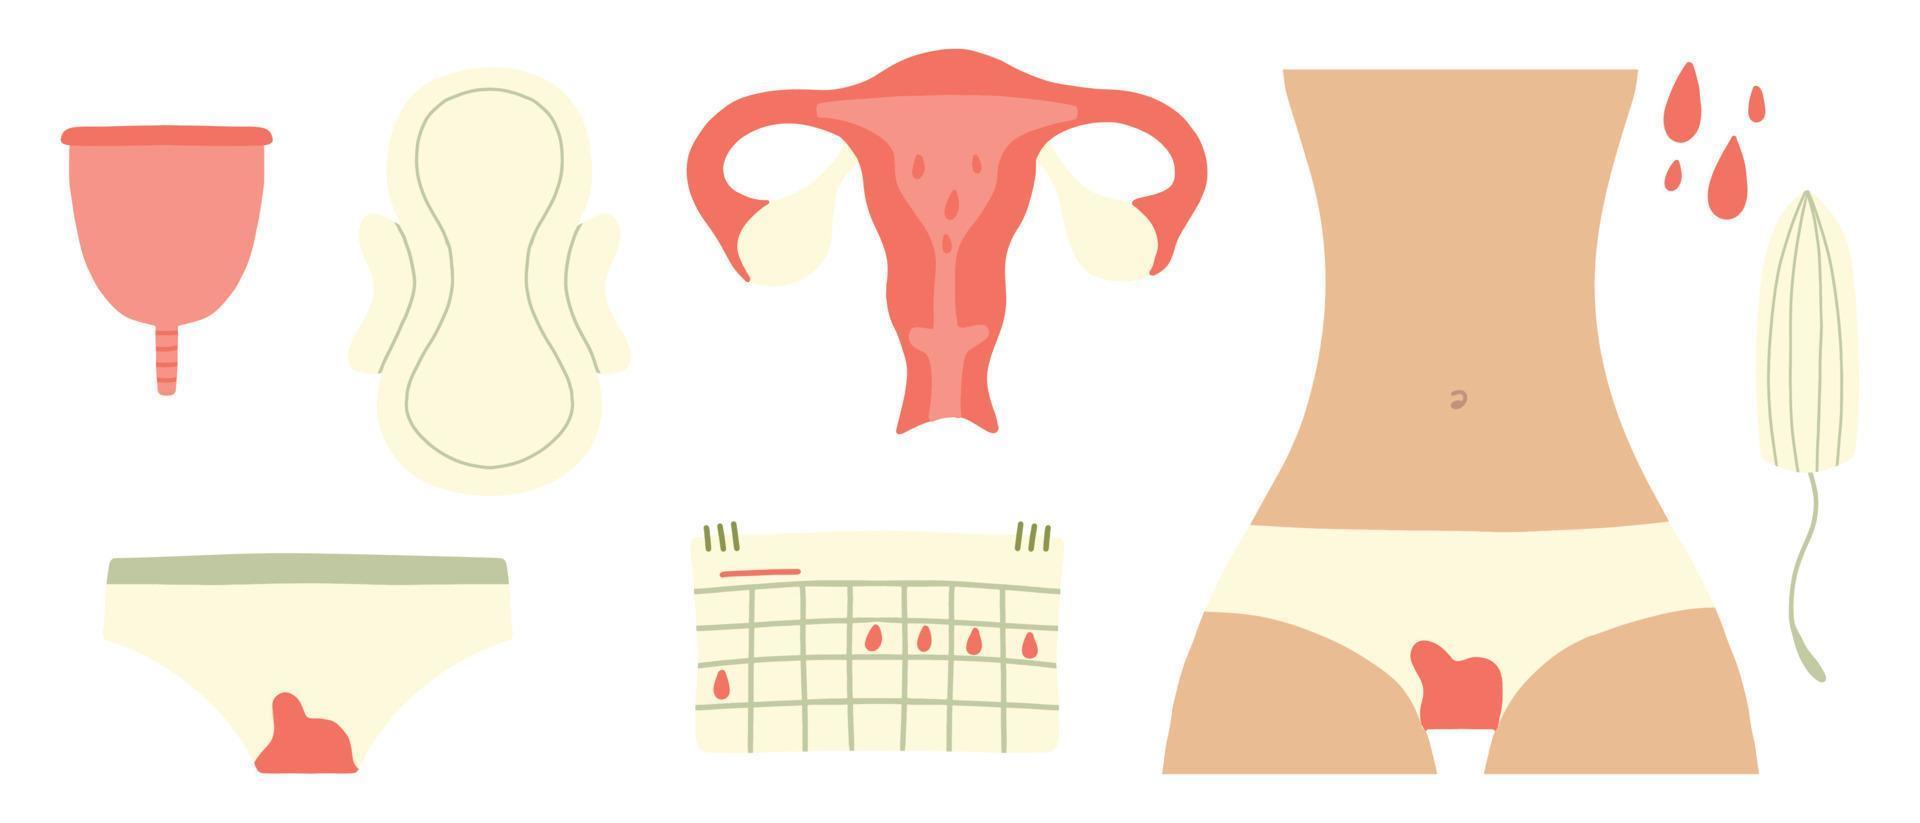 kvinnlig menstruation. kvinnor med period och hygienprodukt tampong, bindor och menskopp. menstruation, menstruationstillbehör tampong illustration. vektor